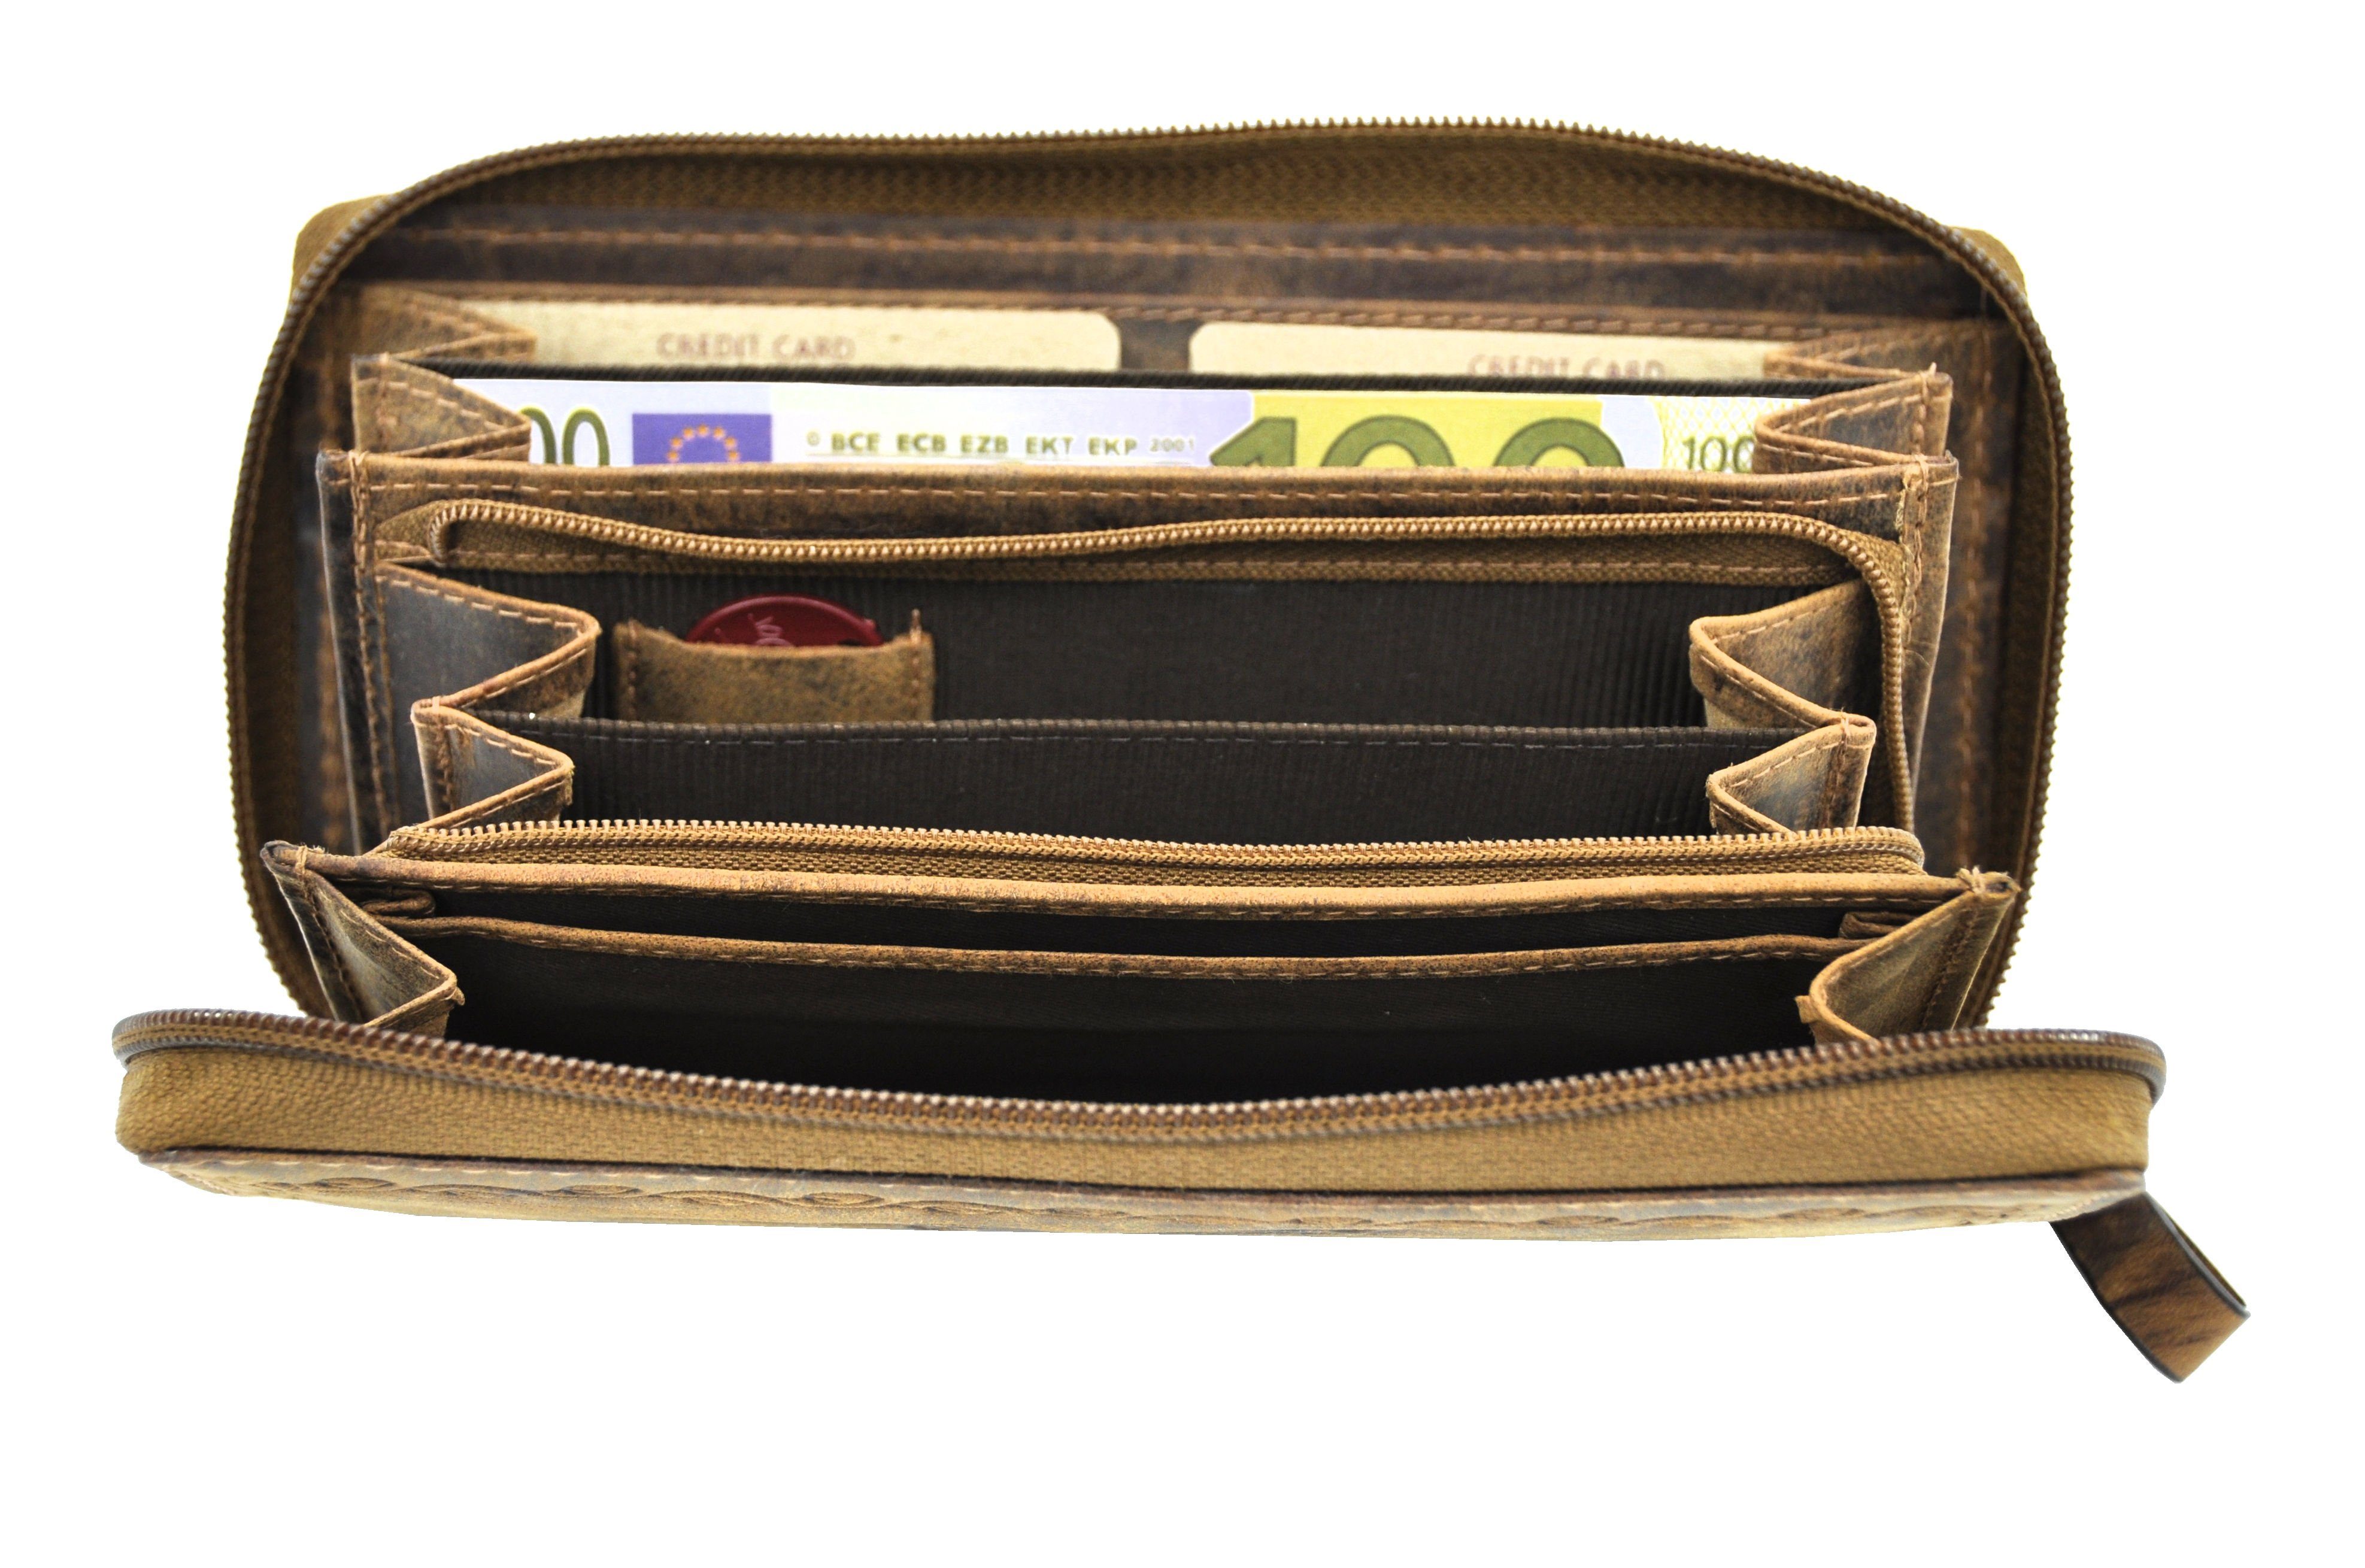 JOCKEY CLUB Geldbörse mit Schutz, echt umlaufender RFID wunderschöner Leder Reißverschluss Portemonnaie Kolibri, Damen